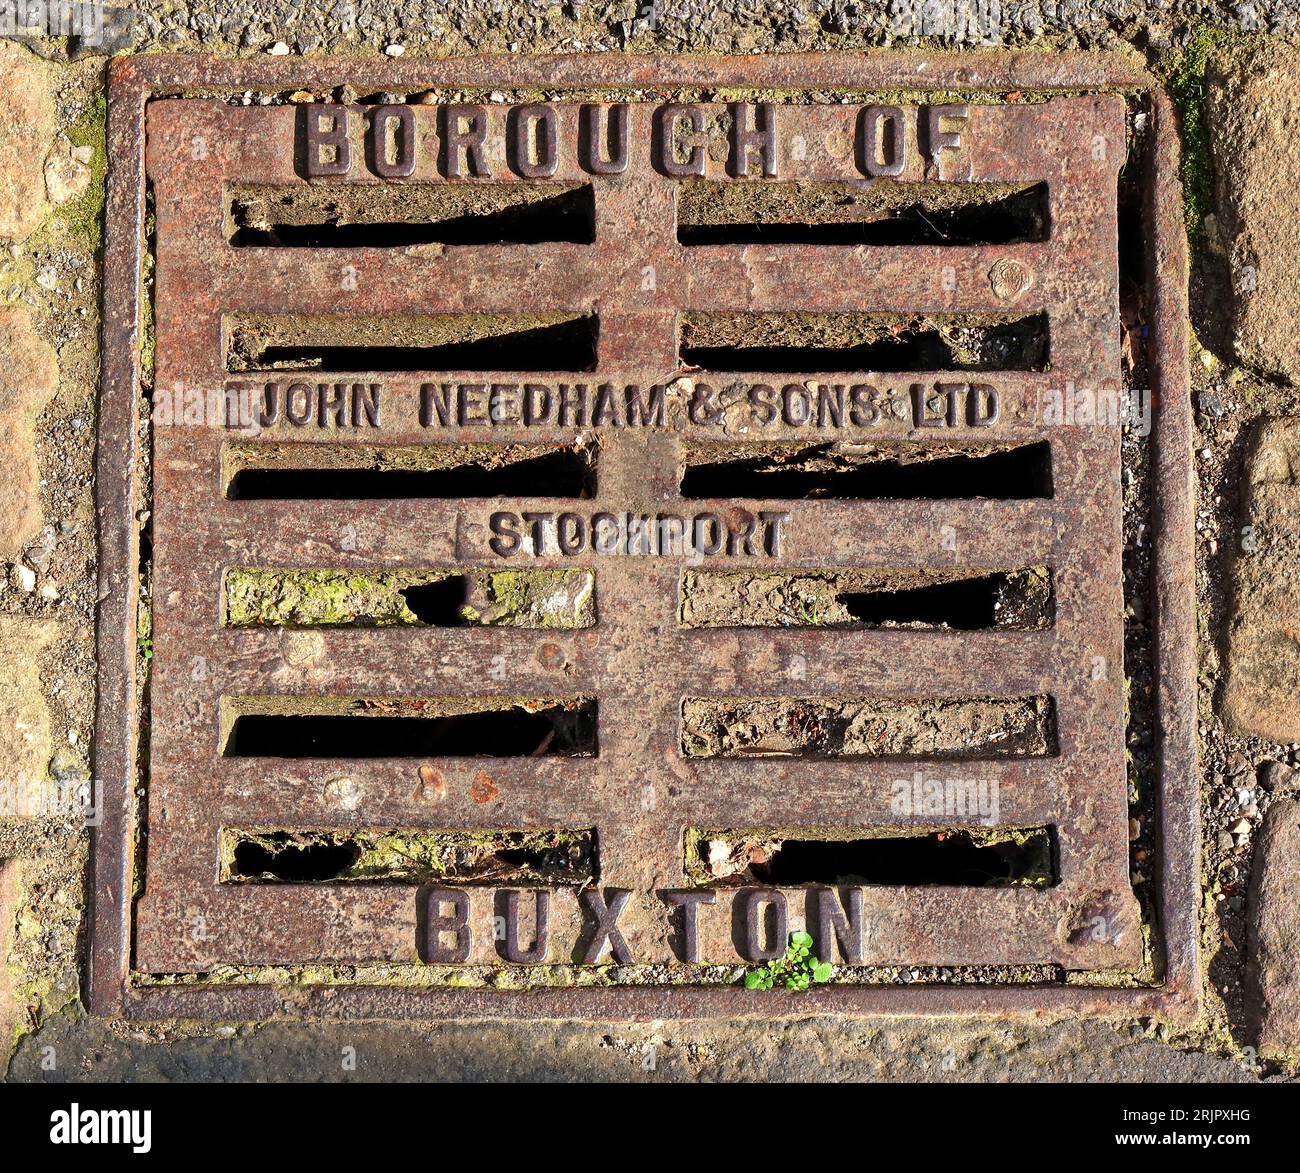 Borough of Buxton fonte grille gaufrée, fabriqué par John Needham & Sons ltd, Stockport, High Peak, Derbyshire, Angleterre, SK17 6XN Banque D'Images